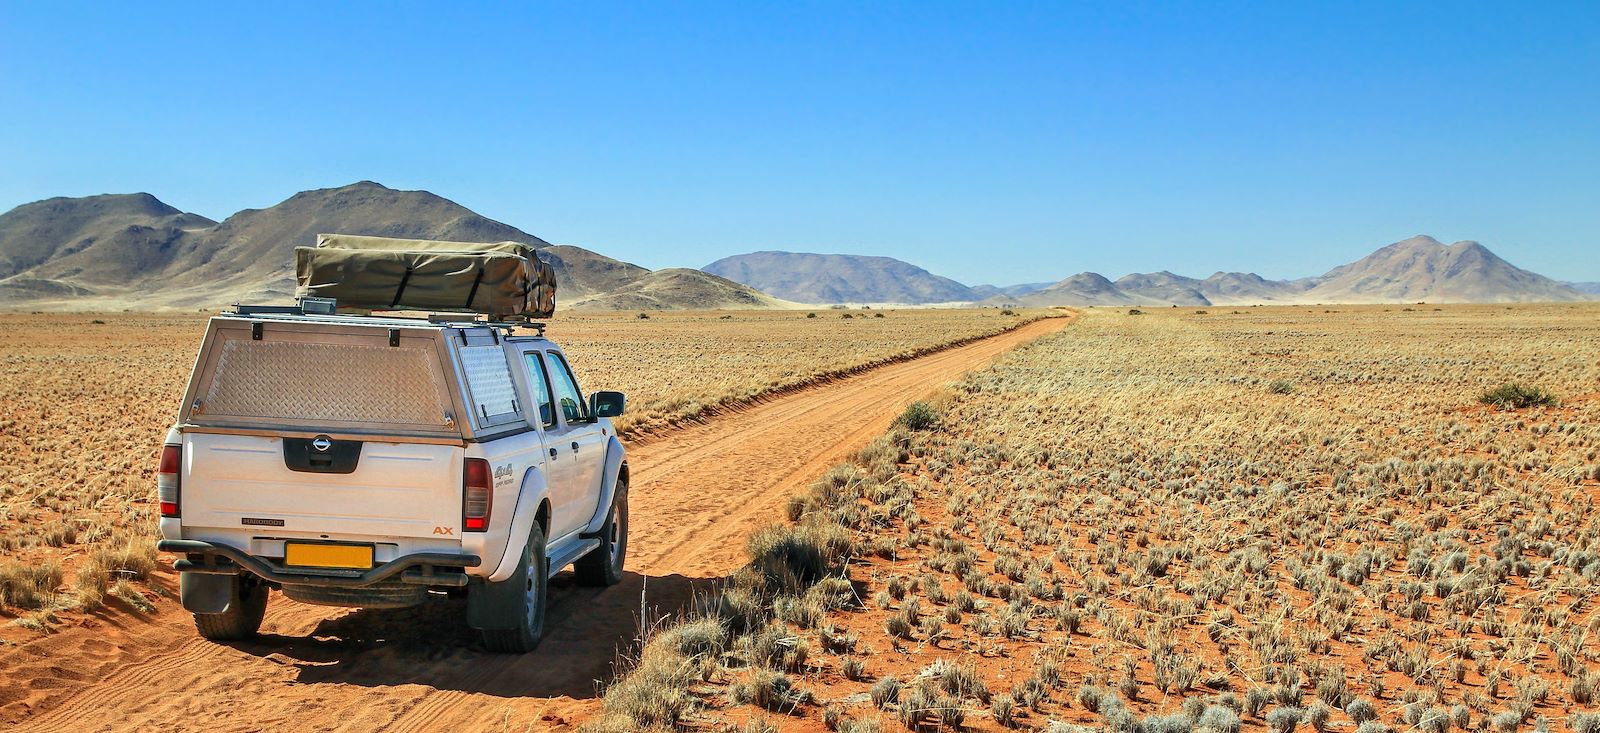 Voyage en véhicule : La Namibie sous les étoiles